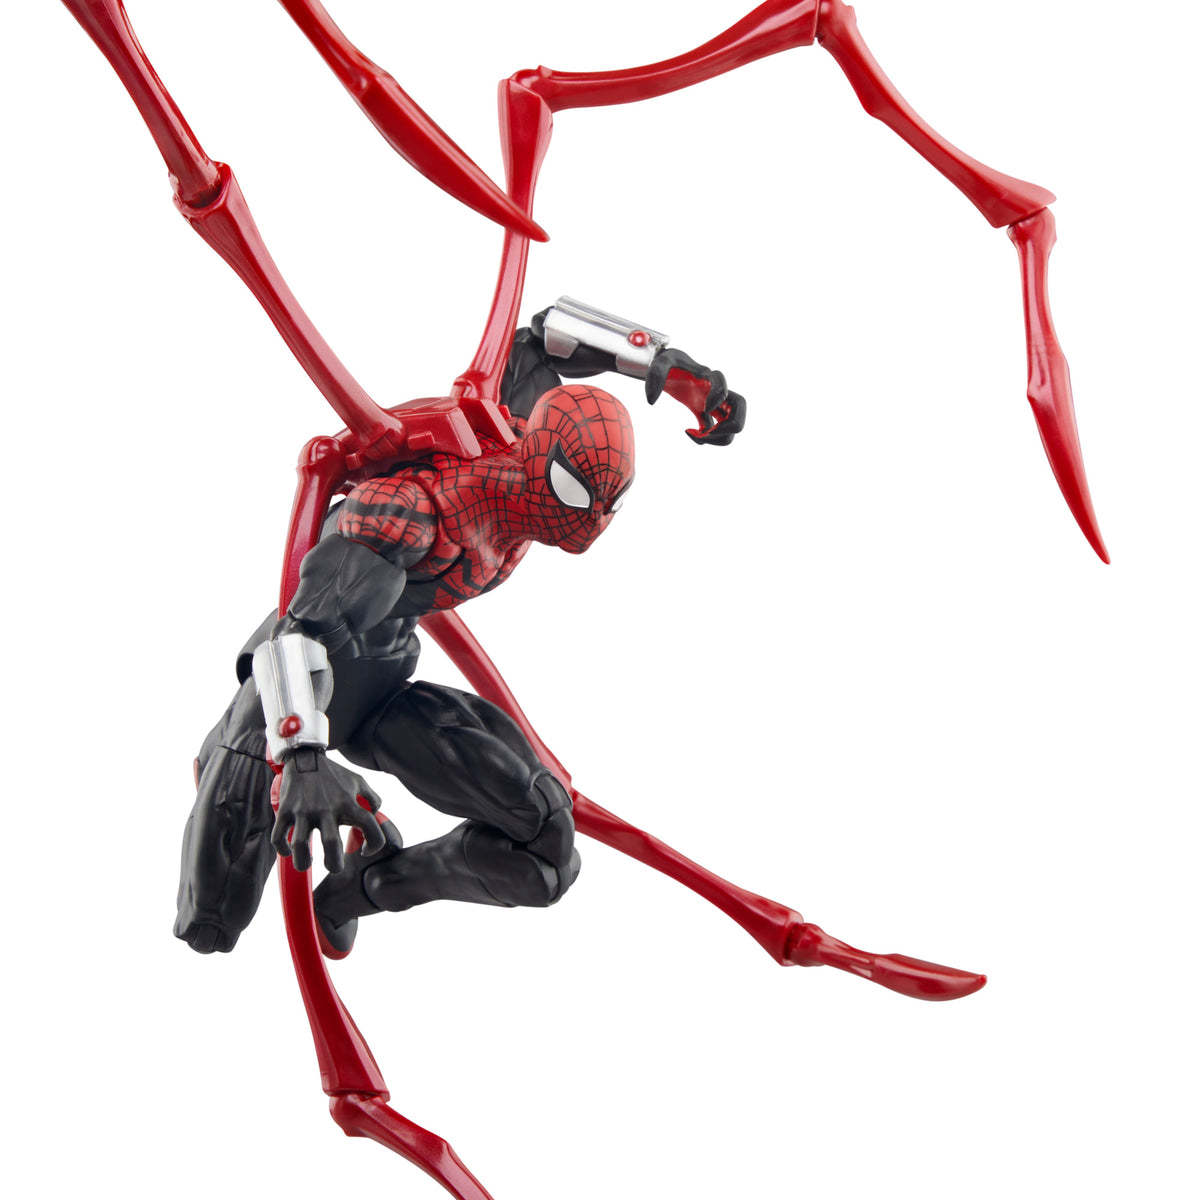 孩之寶『Marvel Legends 究極蜘蛛人』6 吋可動人偶，八爪博士附身的強大蜘蛛人變體襲來！